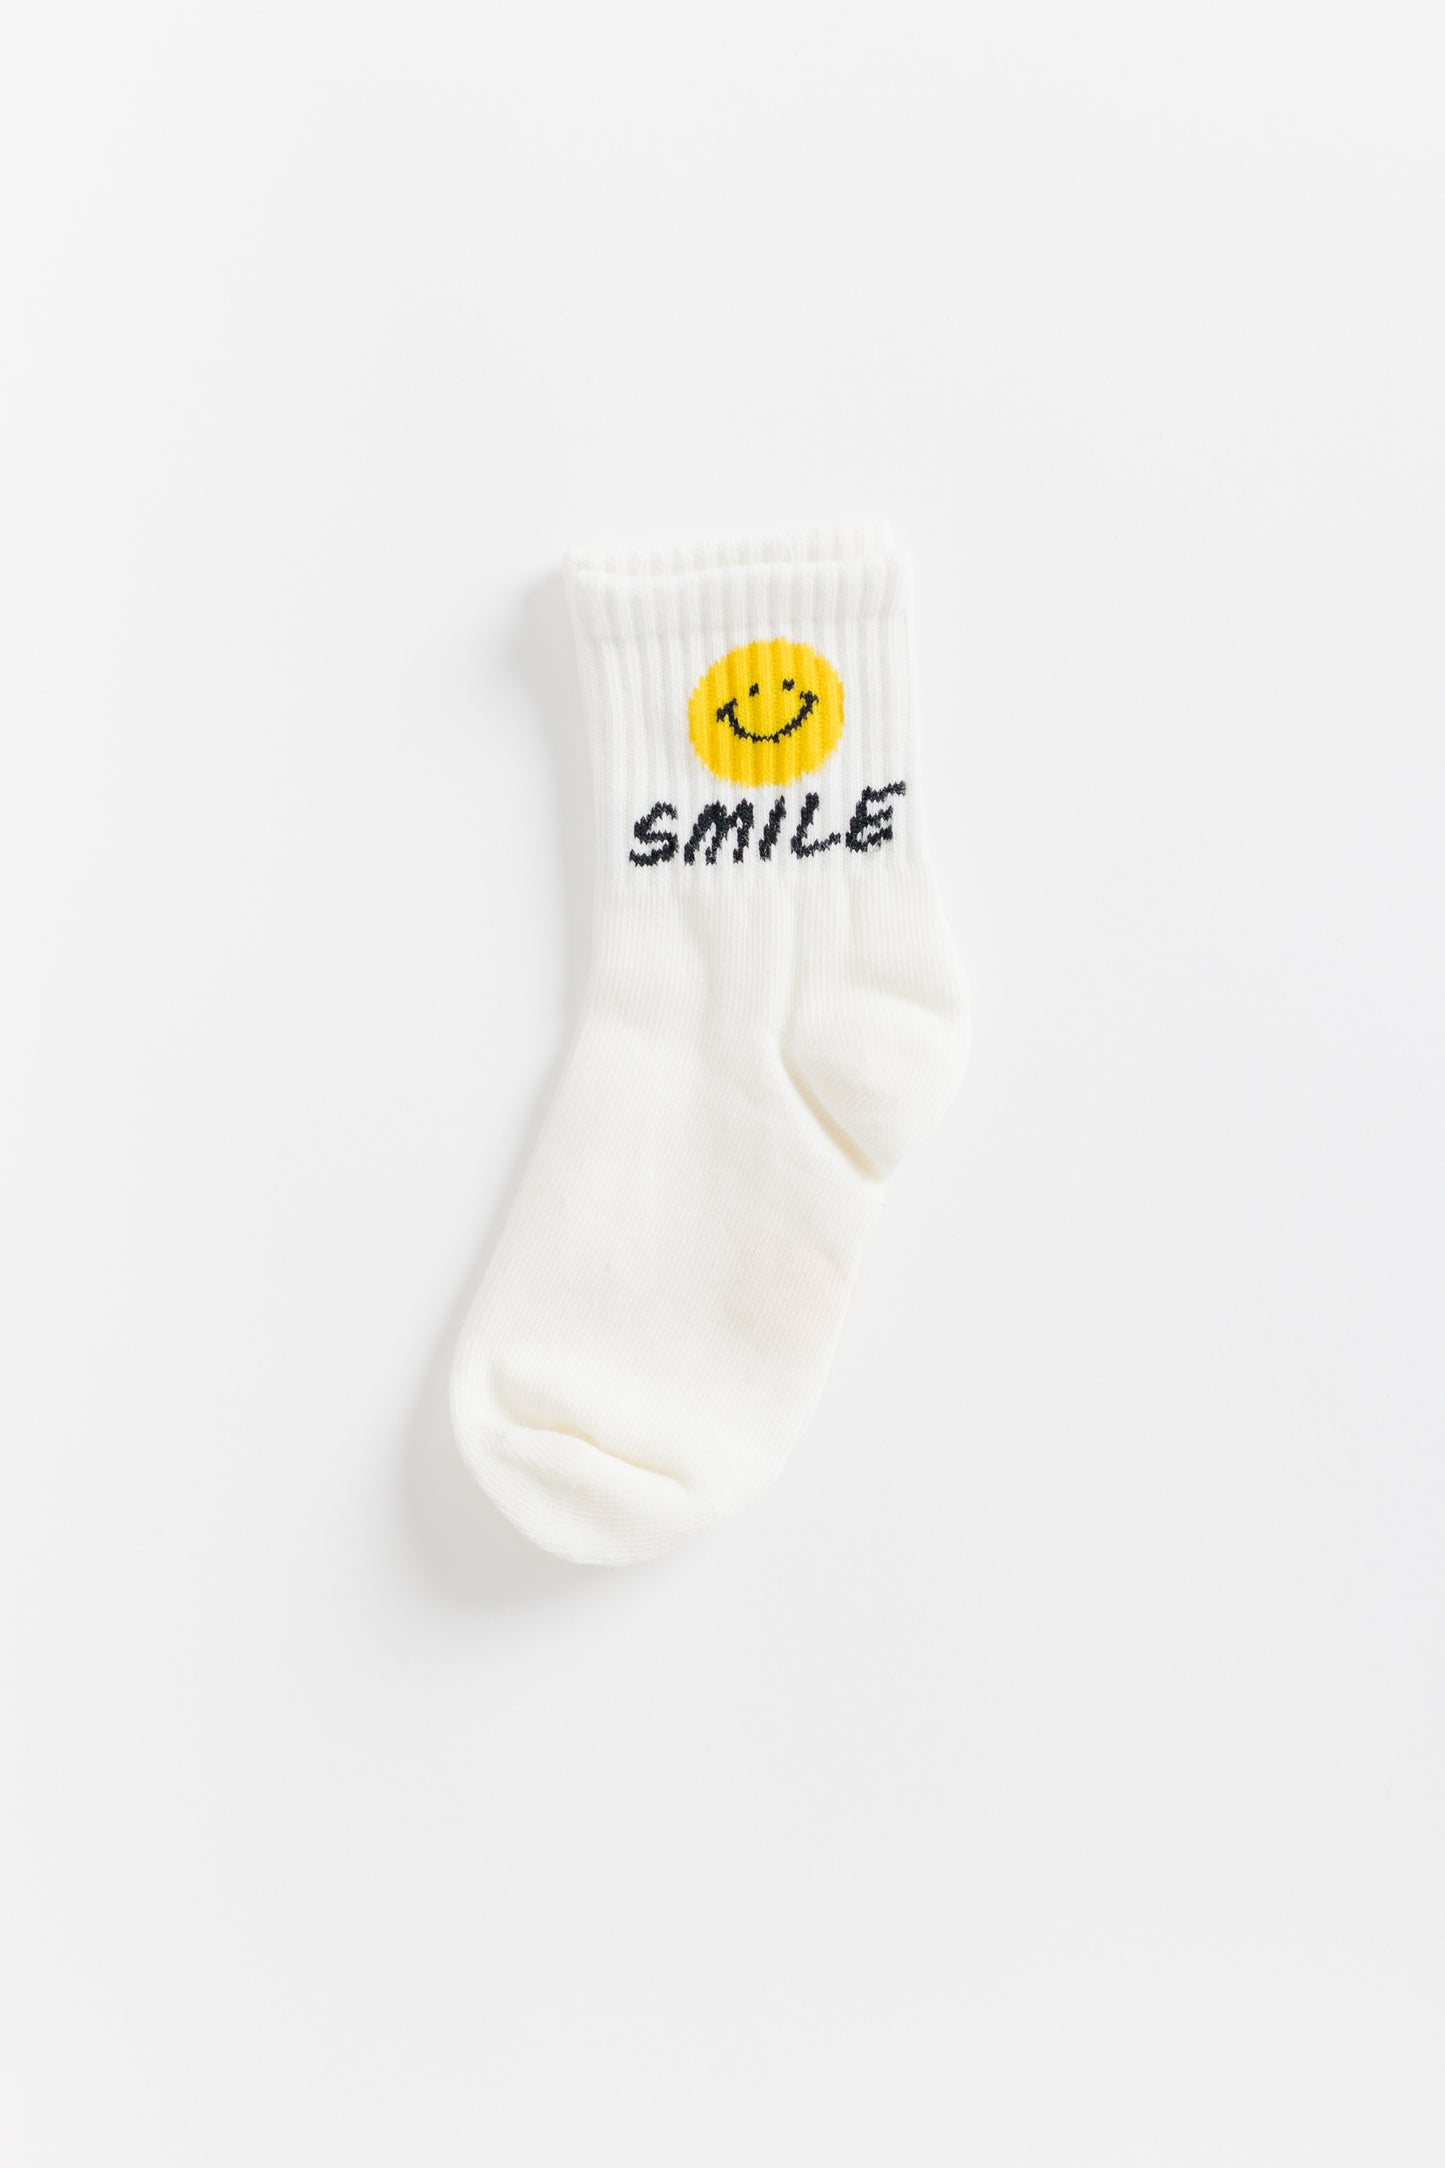 Cove Kids Quarter Smiley Socks